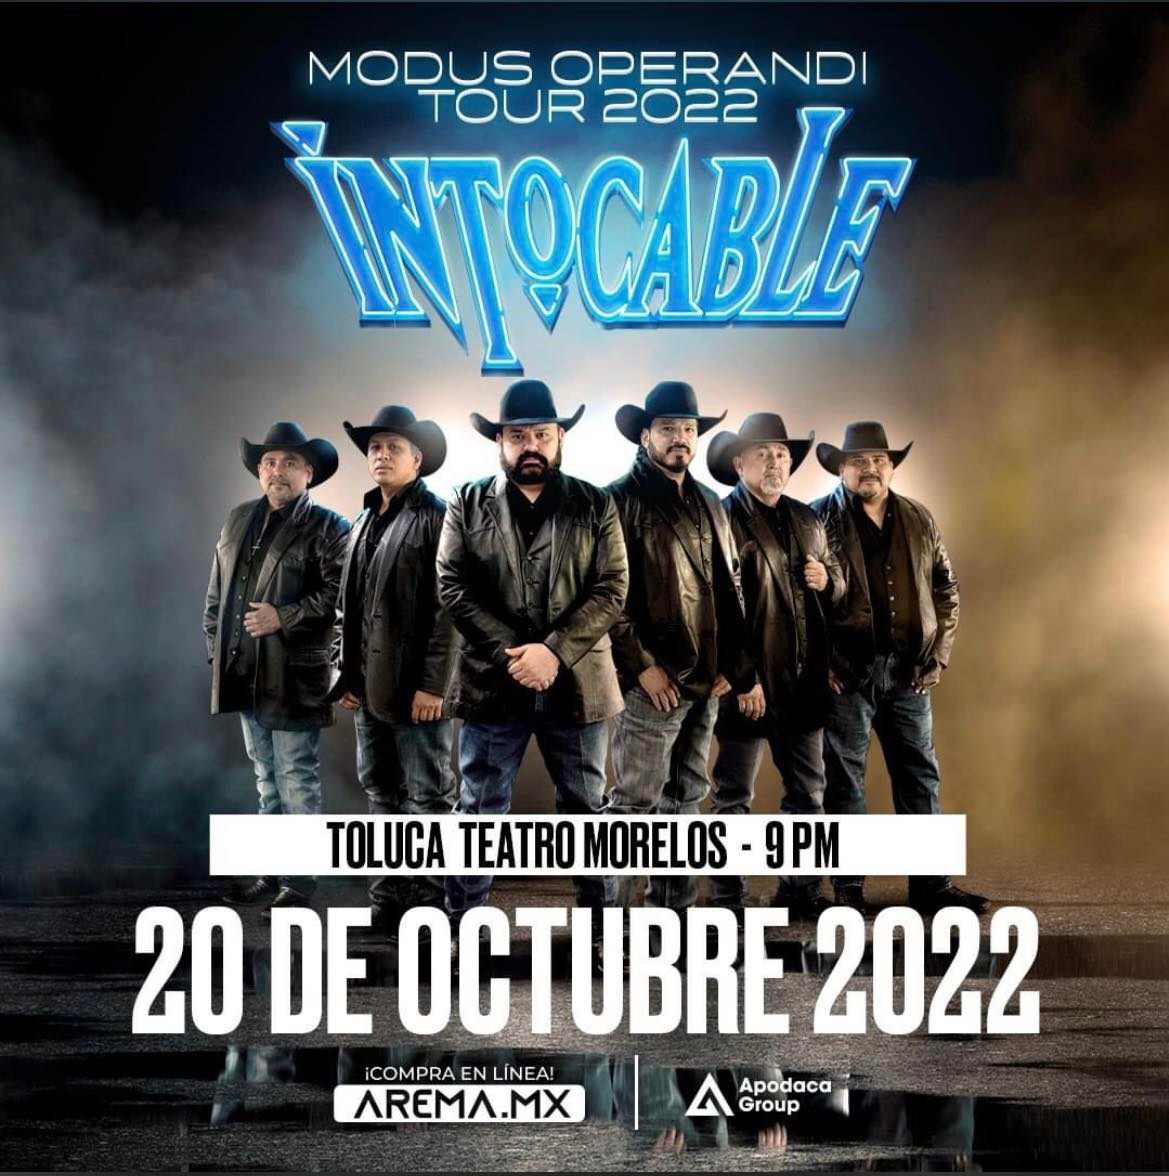 Intocable Teatro Morelos 2022. ¿Todavía hay boletos para su concierto